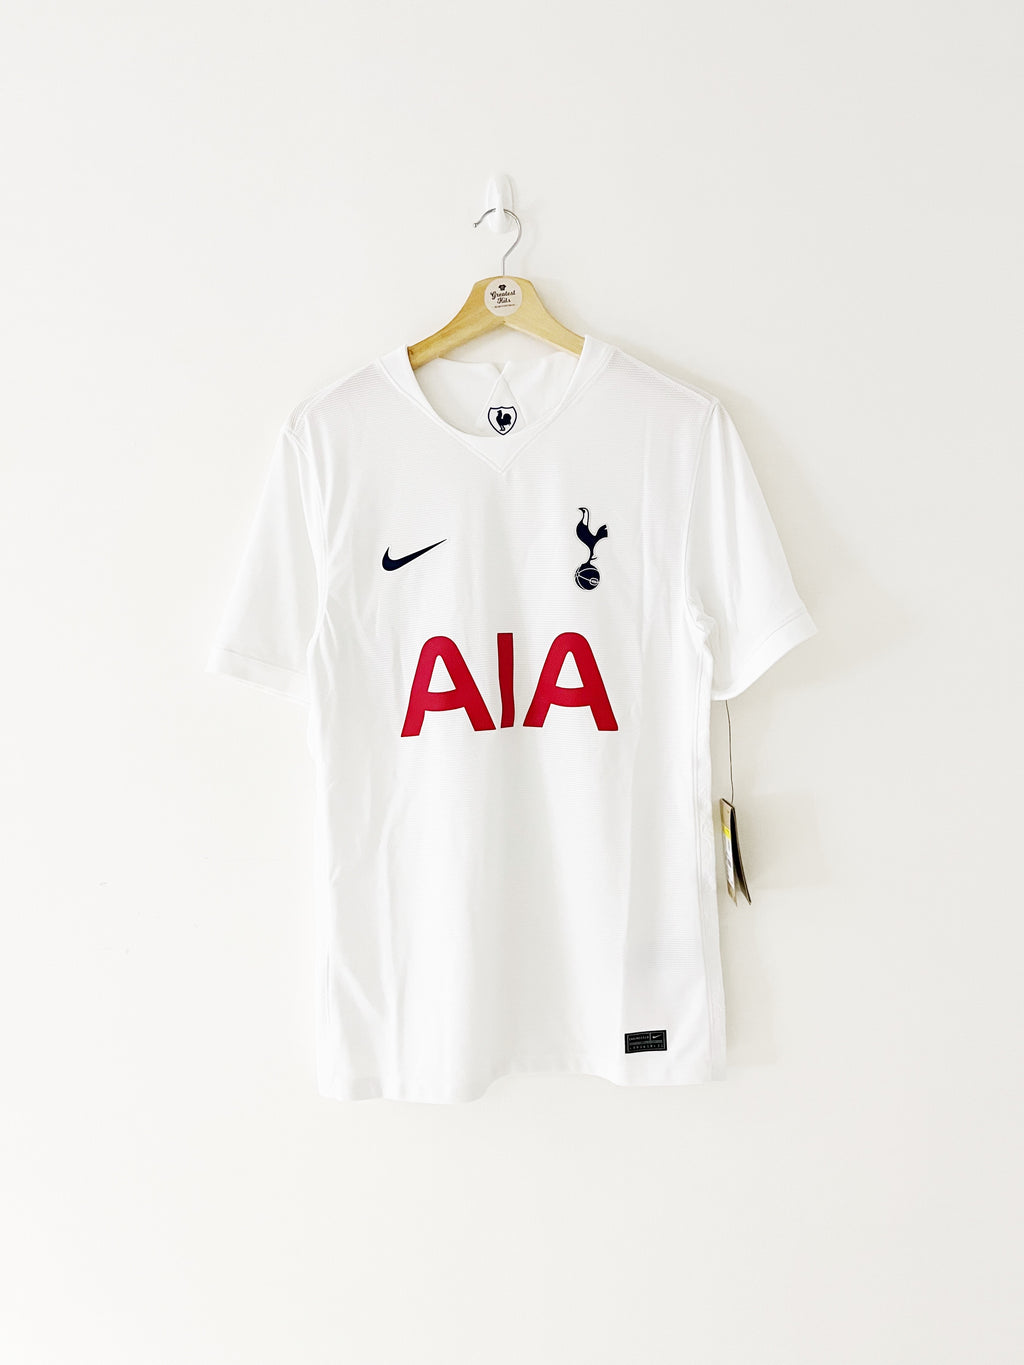 Puma 2008-09 Tottenham Hotspur Shirt 5XL 3XL+